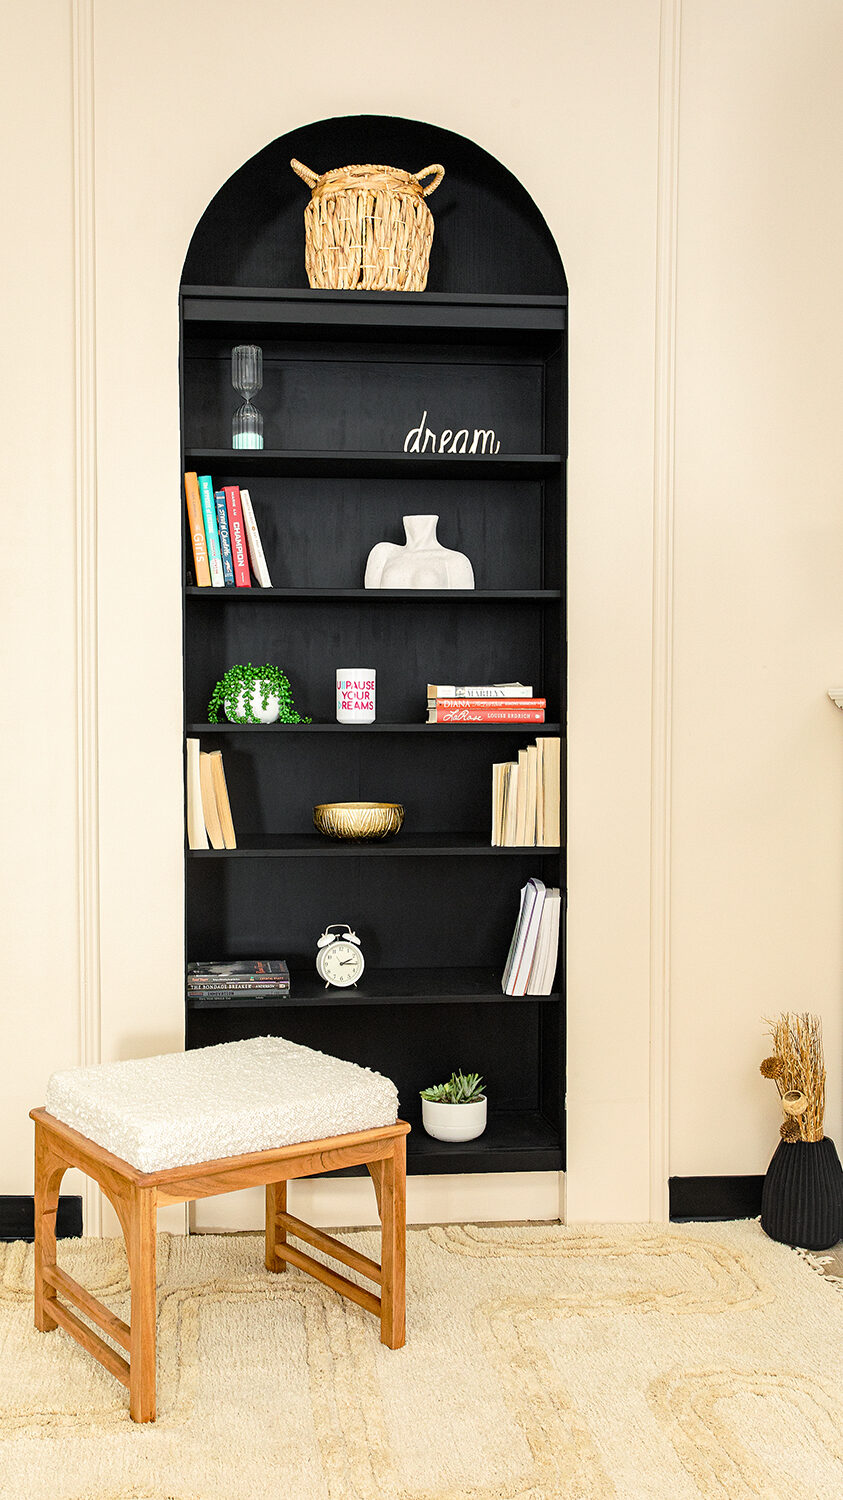 Bookshelf for branding shoot